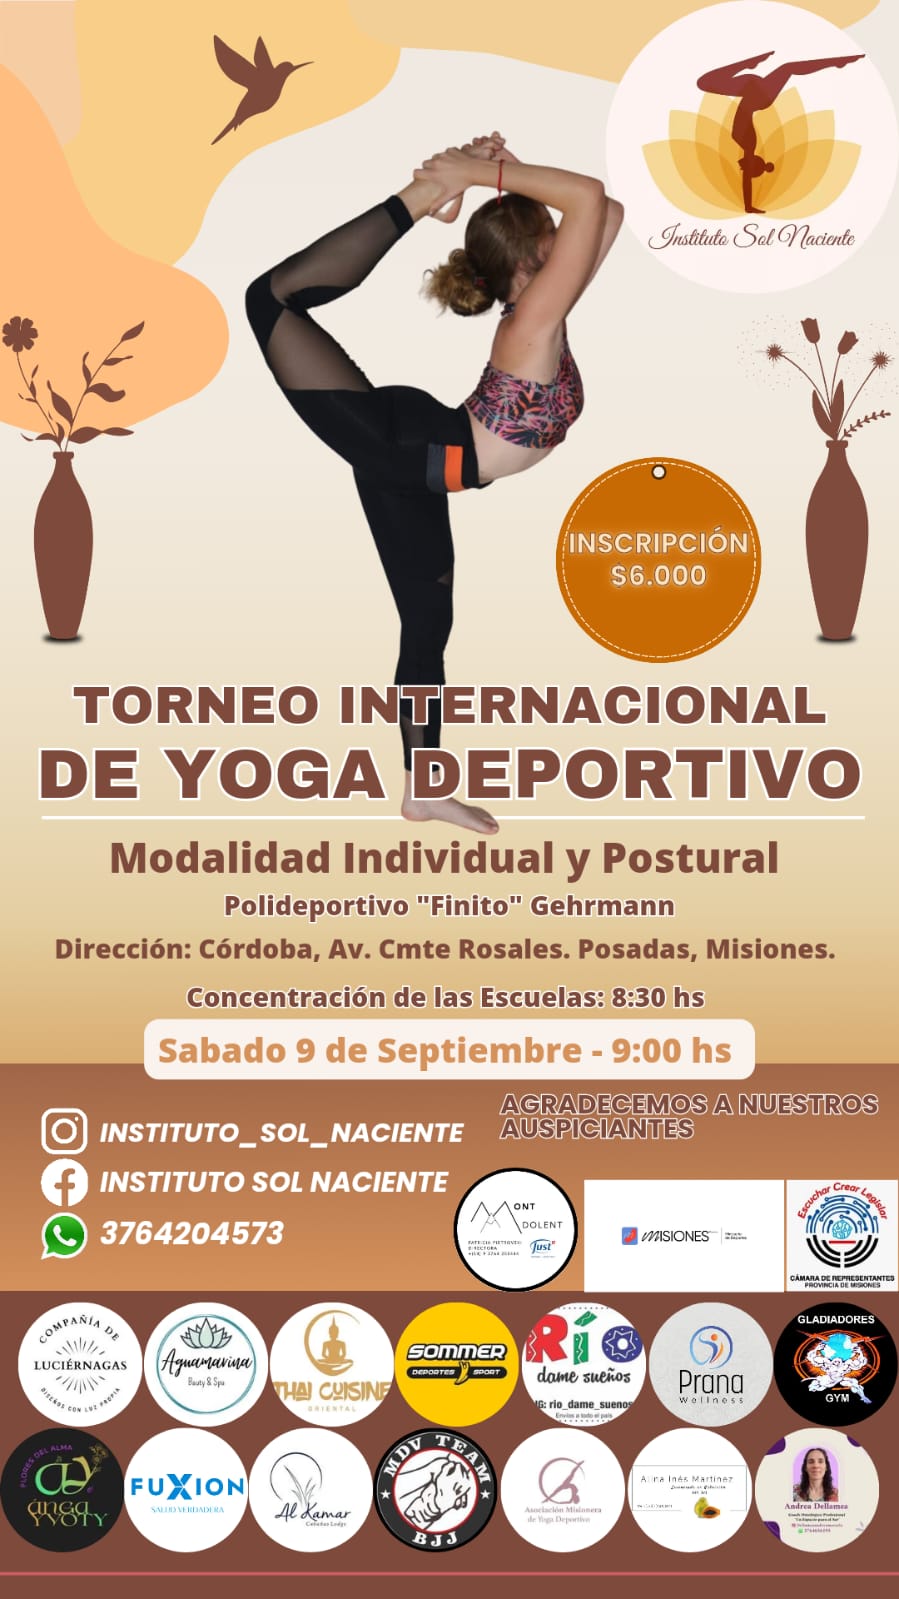 El Torneo Internacional de Yoga Deportivo tendrá lugar en septiembre imagen-1